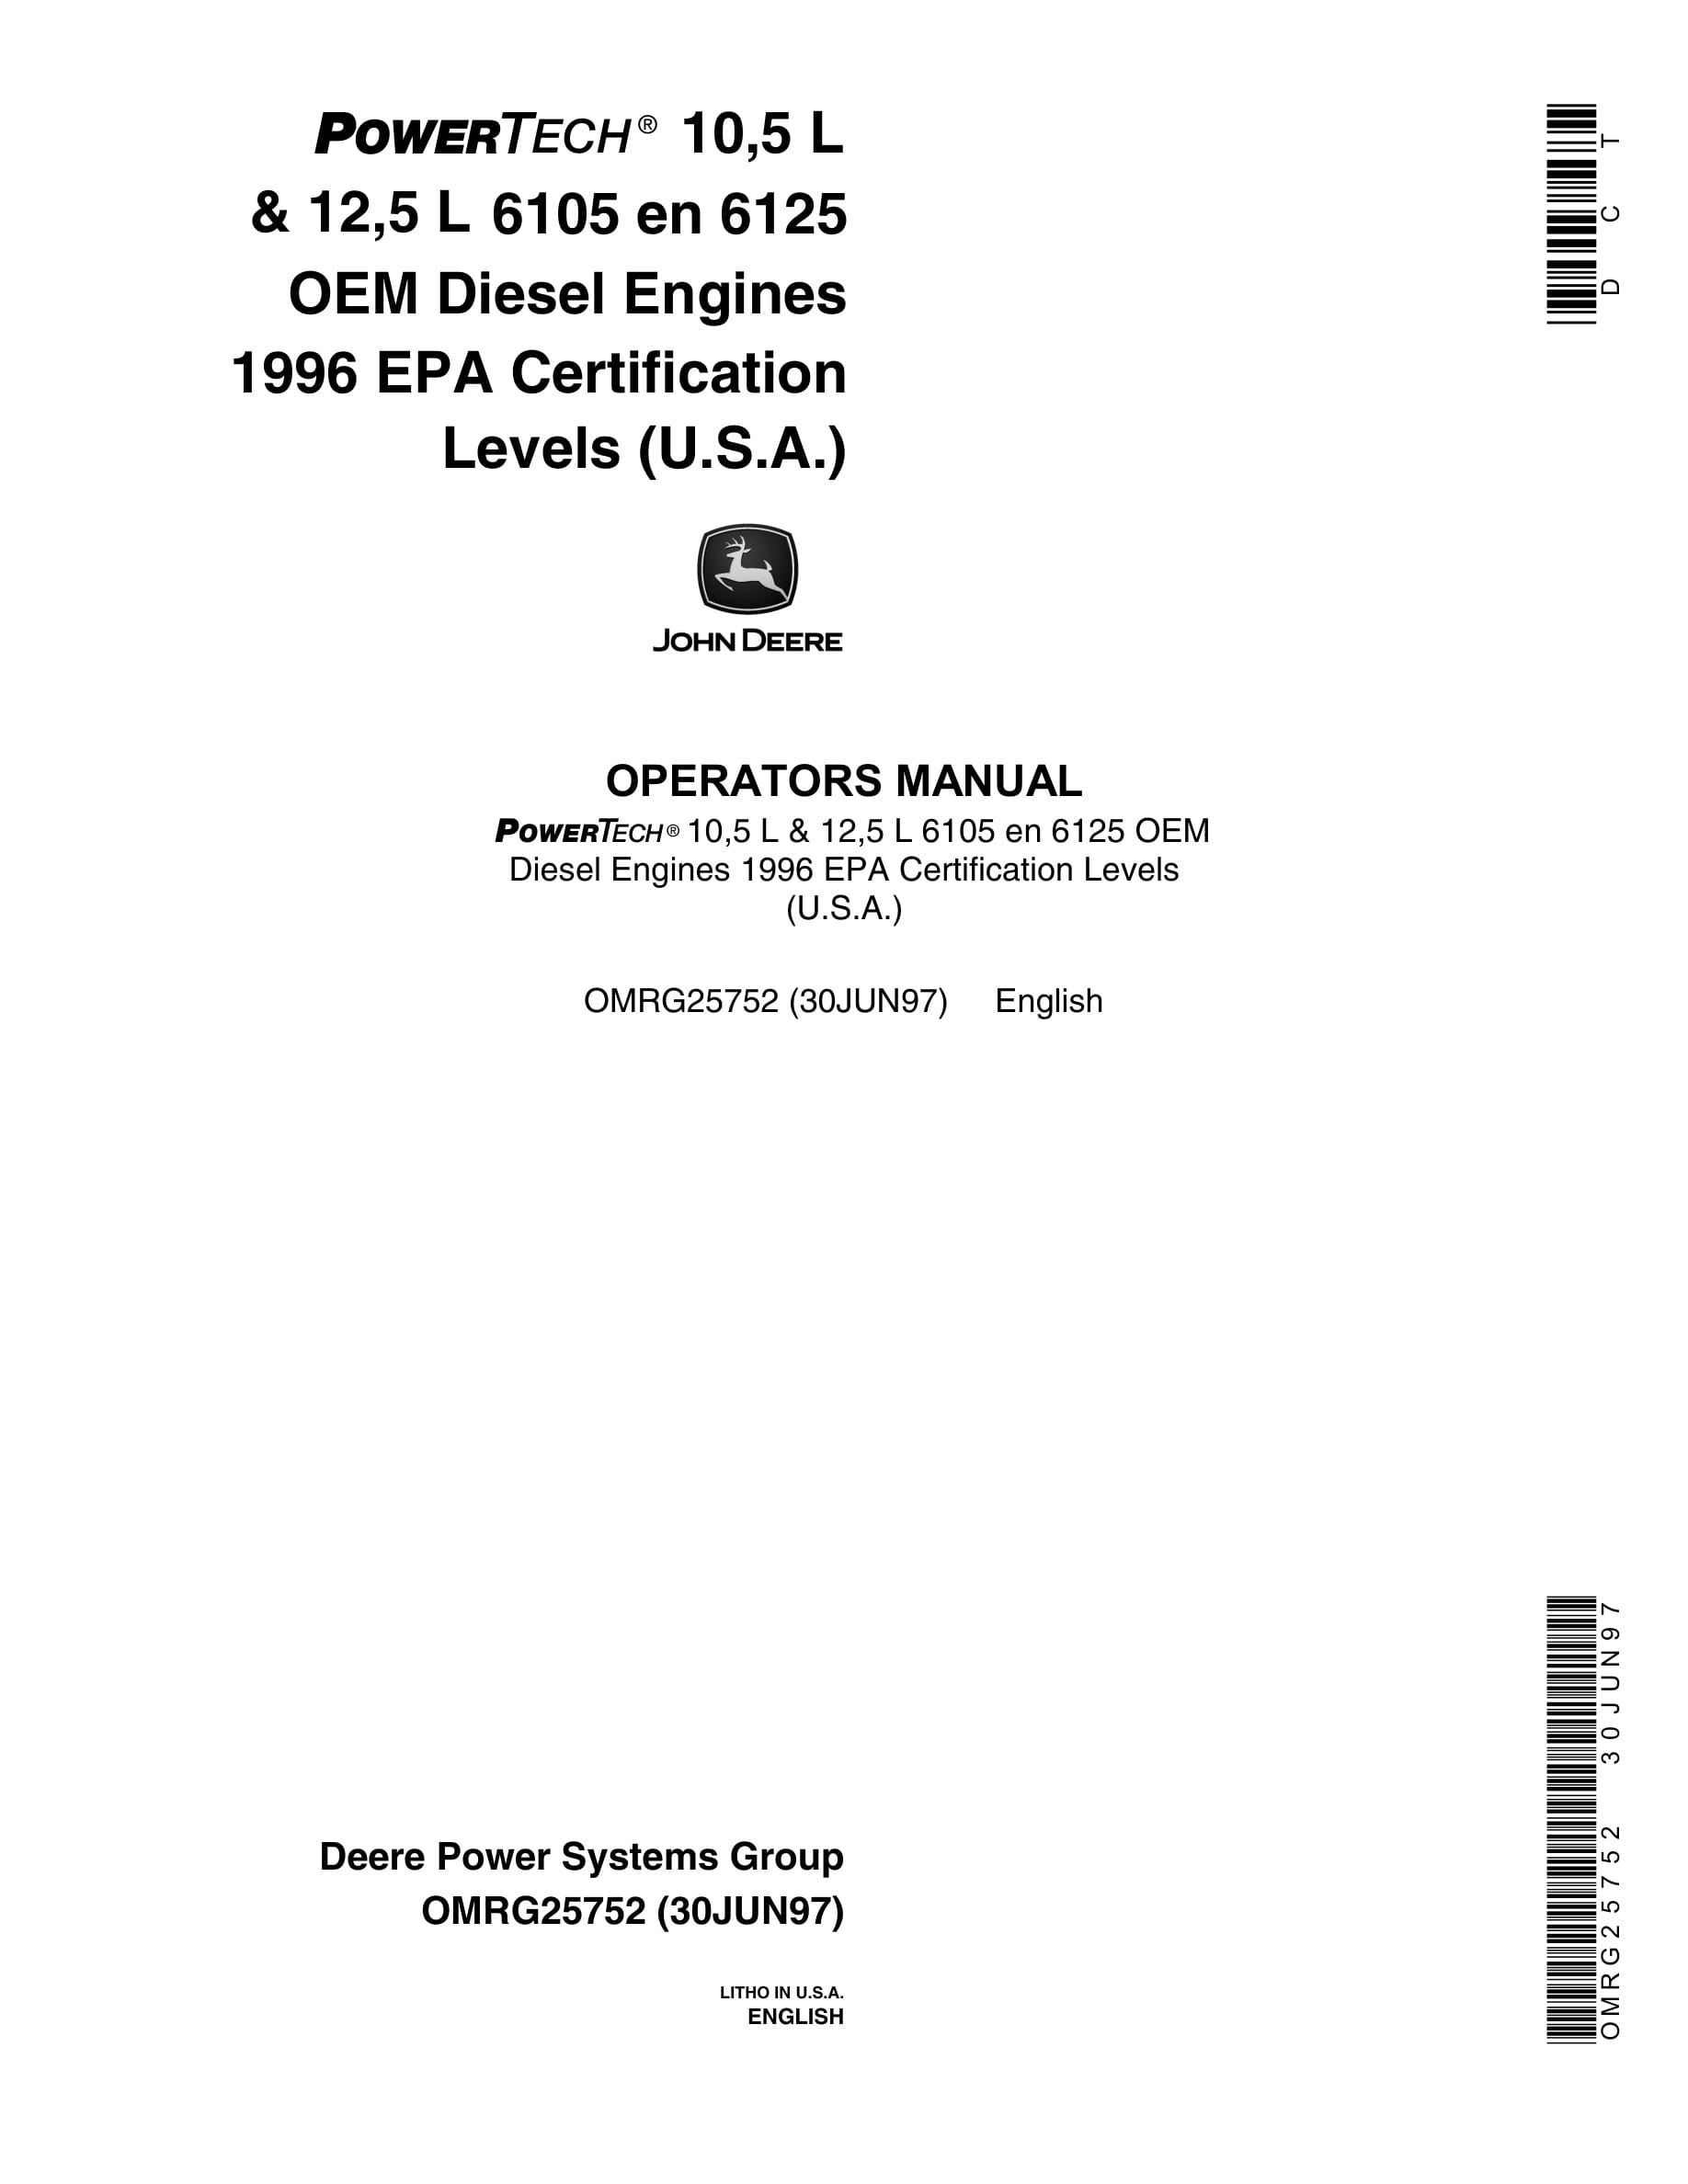 John Deere PowerTech 10,5 L & 12,5 L 6105 en 6125 OEM Diesel Engines Operator Manual OMRG25752-1